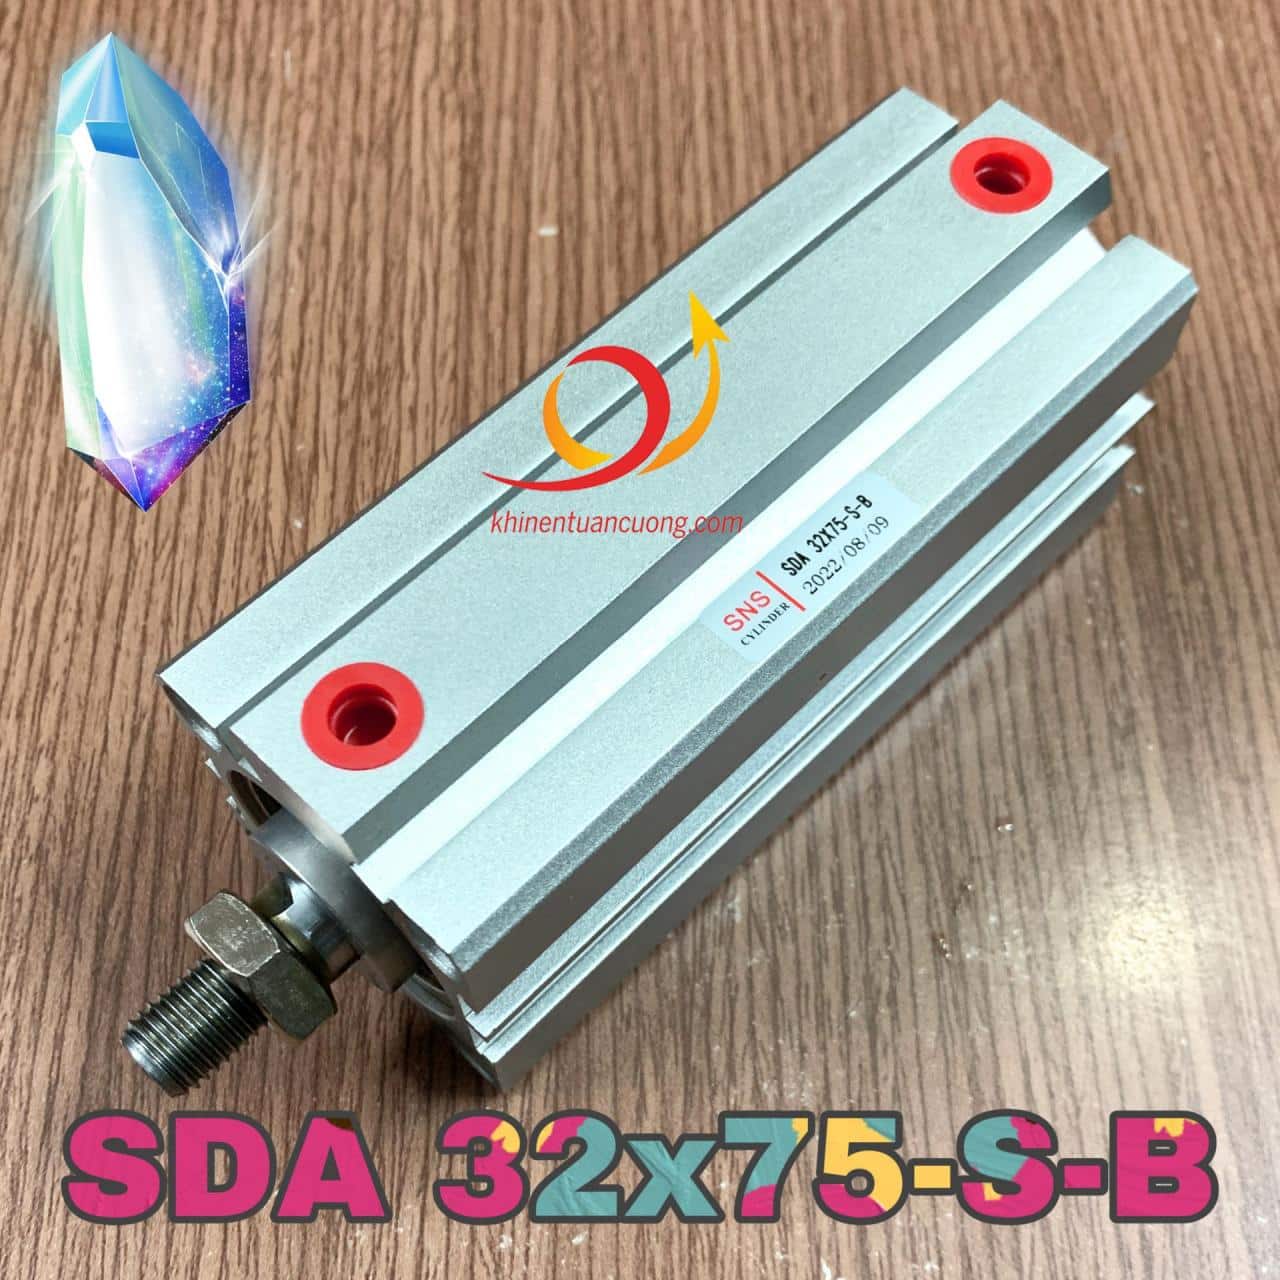 Đuôi -S có nghĩa là xylanh có sẵn vòng từ, dài hơn SDA32x75 cơ bản 10mm. Còn đuôi -B có nghĩa là có ren ngoài để kết hợp với mắt trâu hoặc các loại đầu Ypin - I ngắn